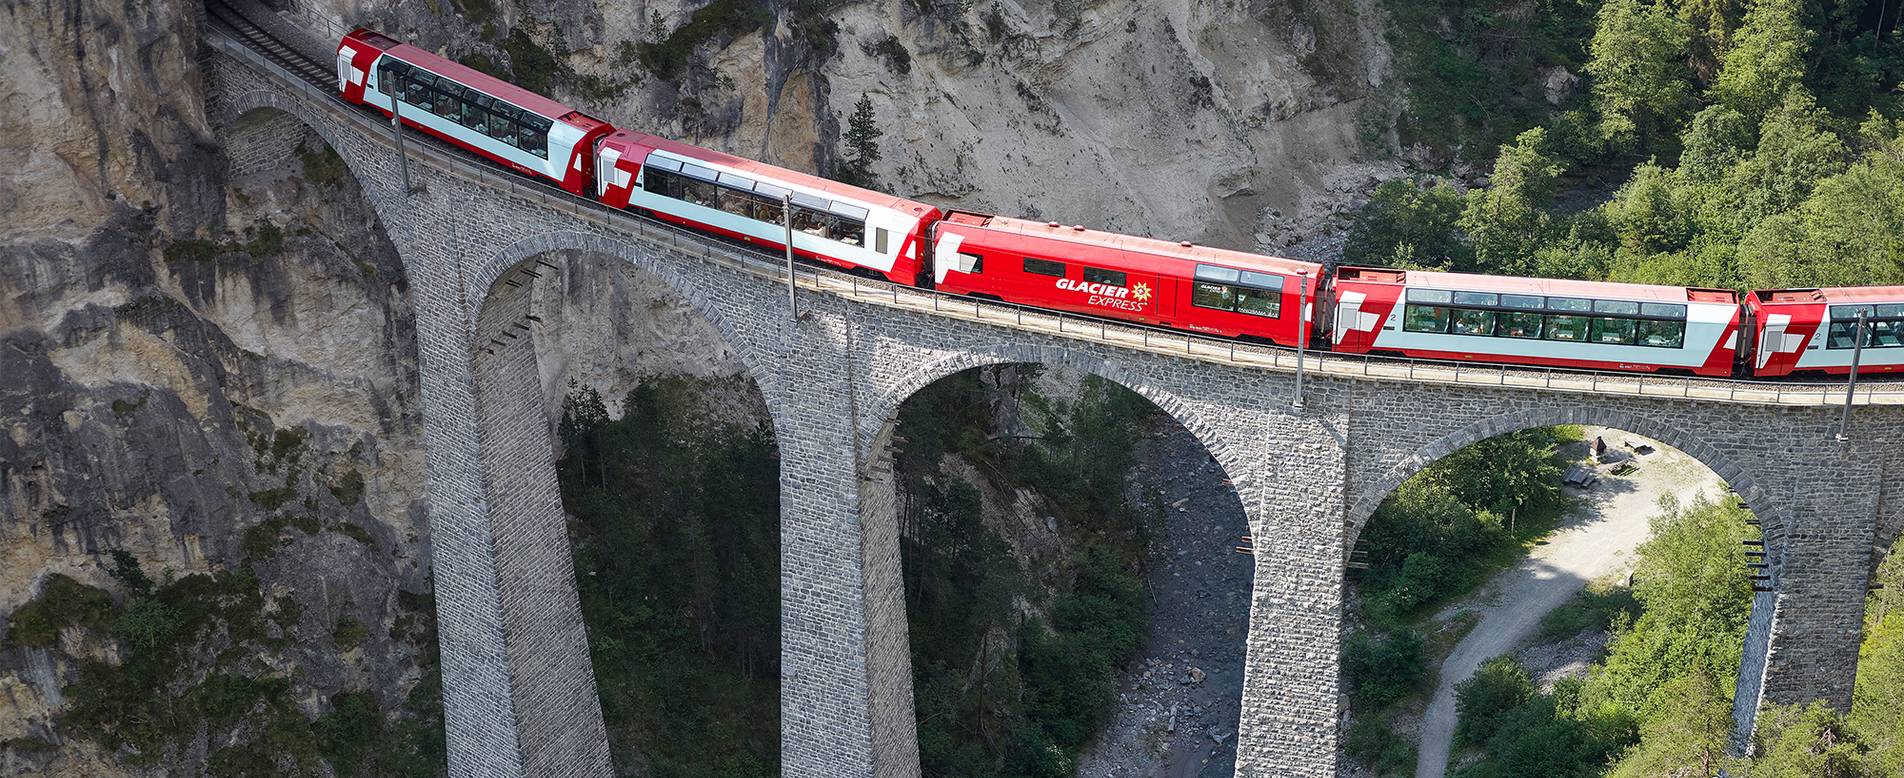 O expresso geleira está entre os mais Viagens de Trem na Europa